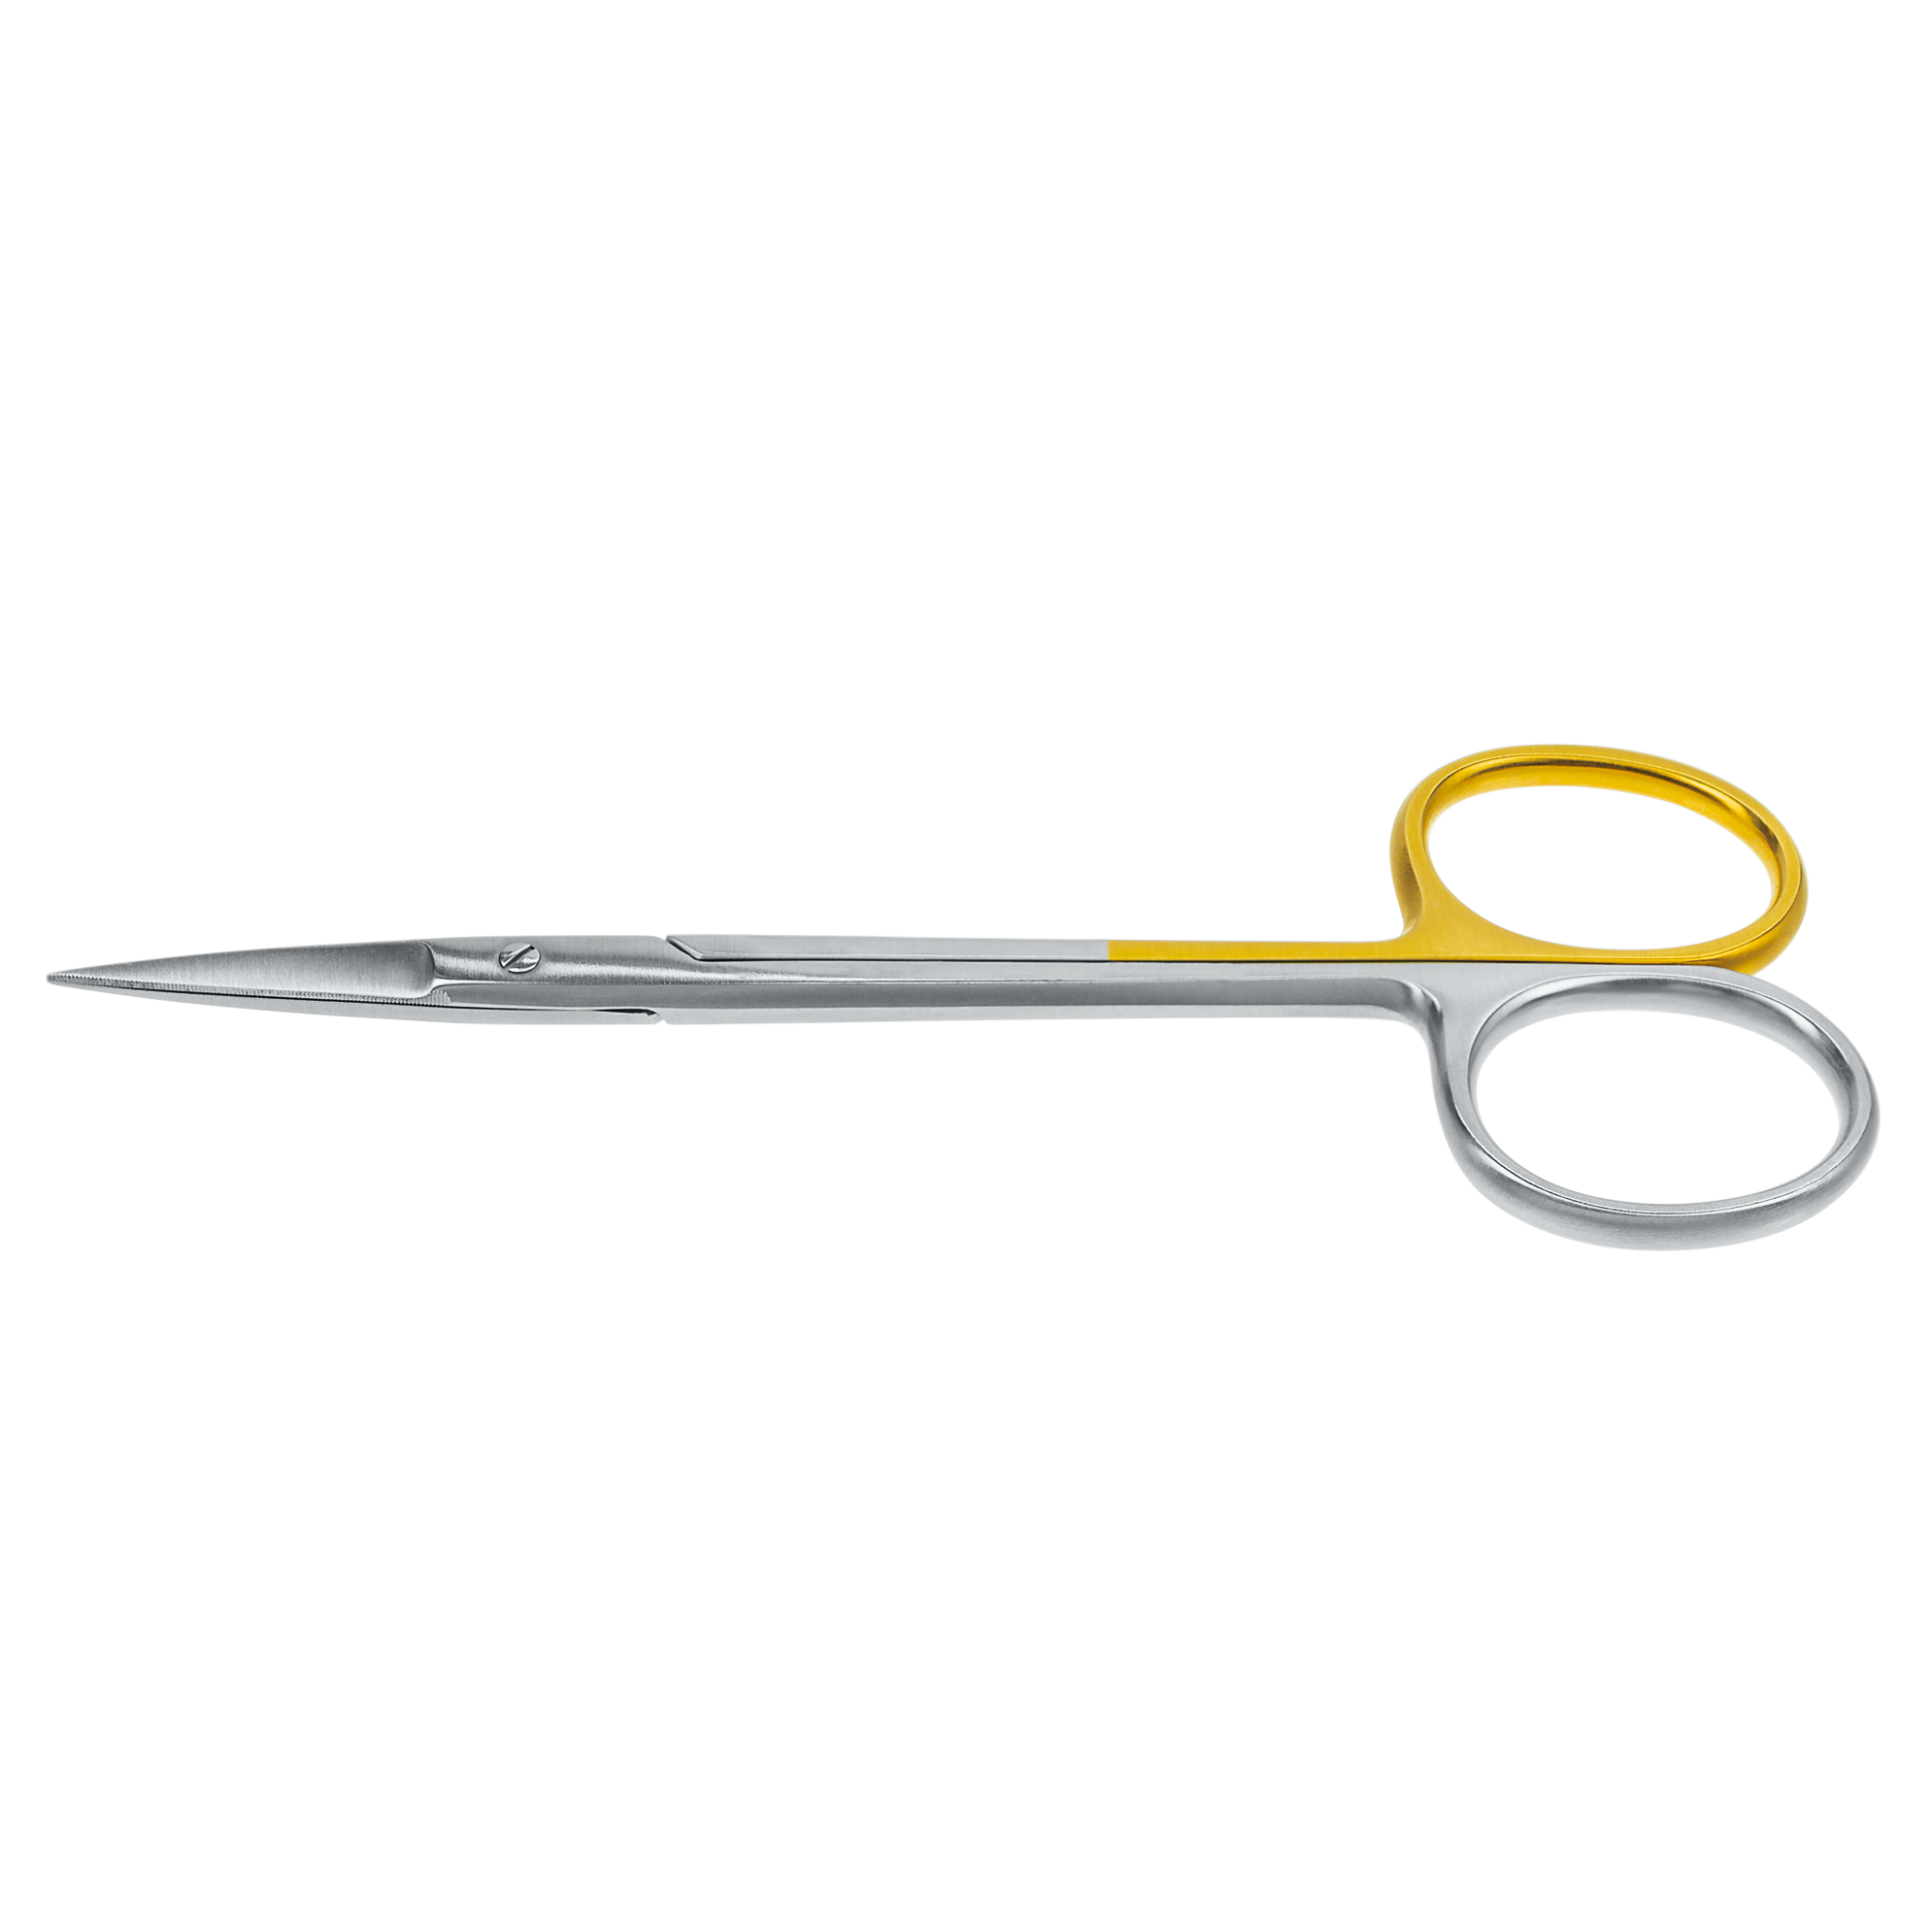 1110-400 (iris scissors)